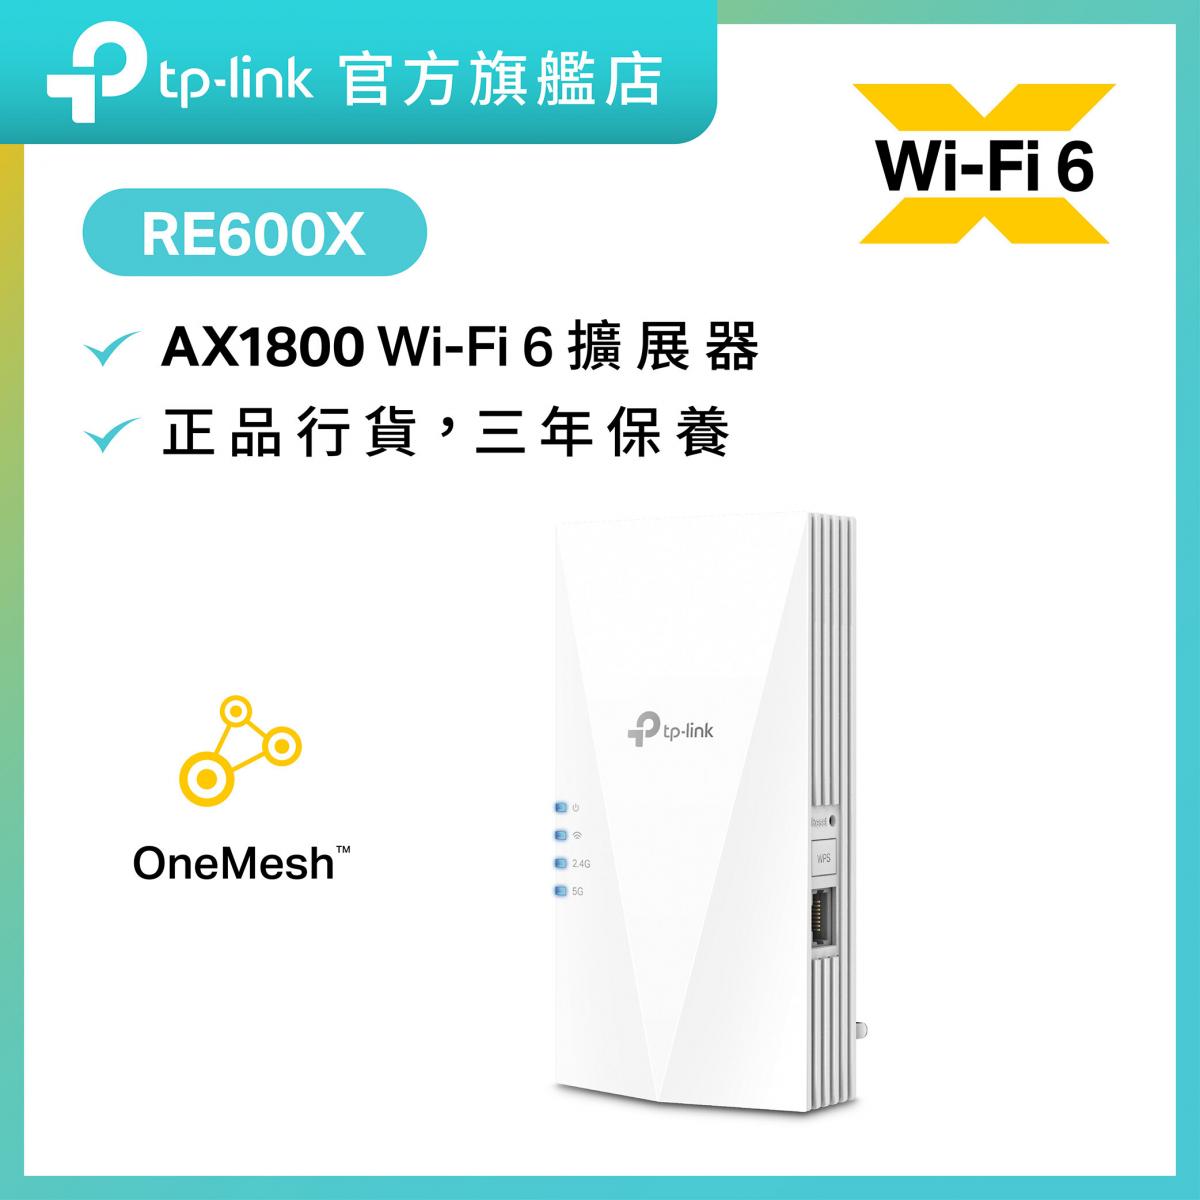 RE600X AX1800 Wi-Fi 6 Wi-Fi 放大器/信號延伸器